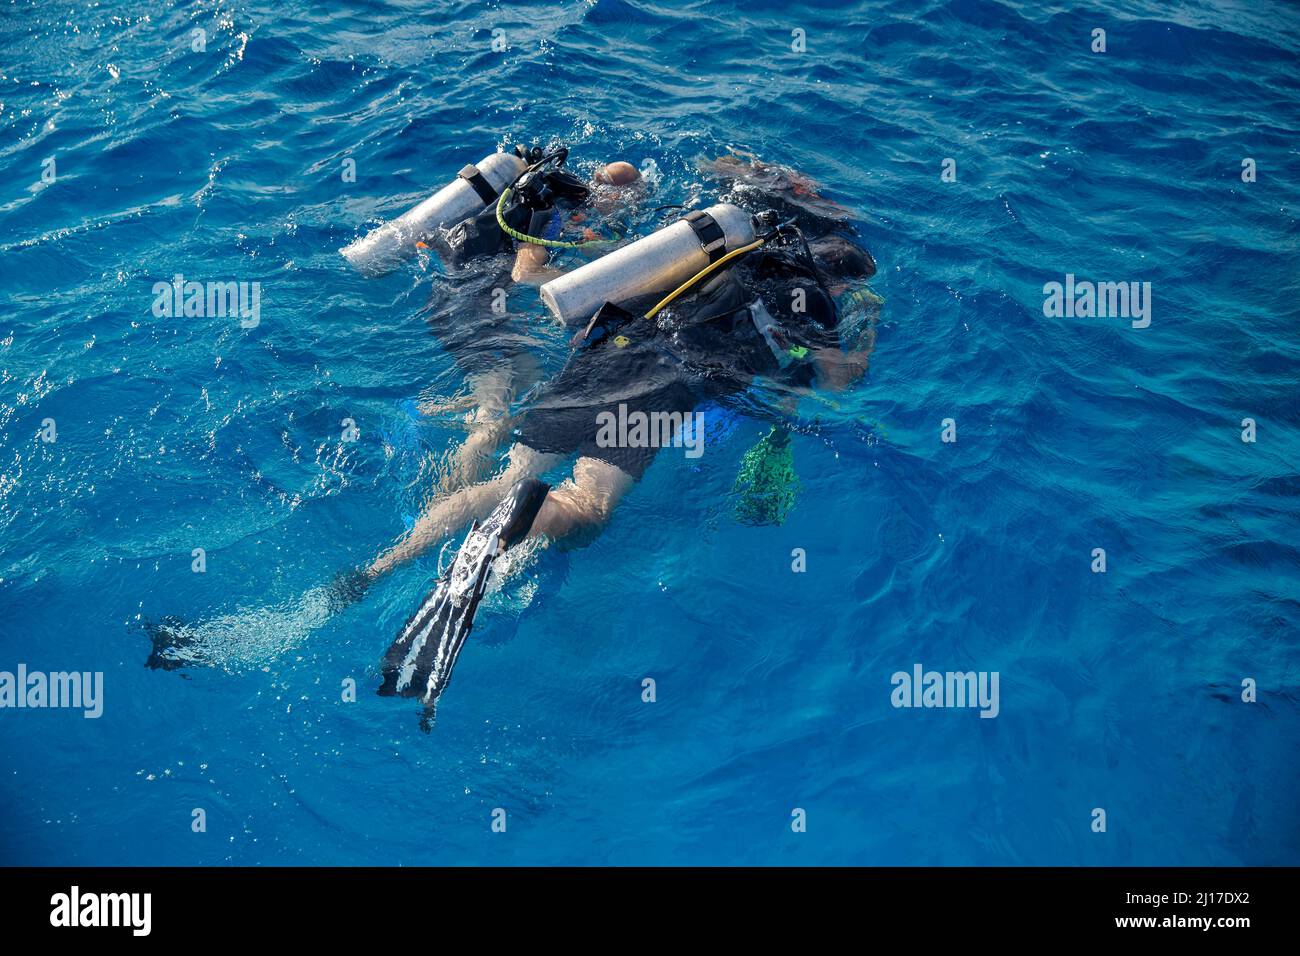 Tauchausbildung, Instruktor weist Touristen an, unter Wasser mit Tauchen im Meer zu tauchen, Draufsicht. Stockfoto